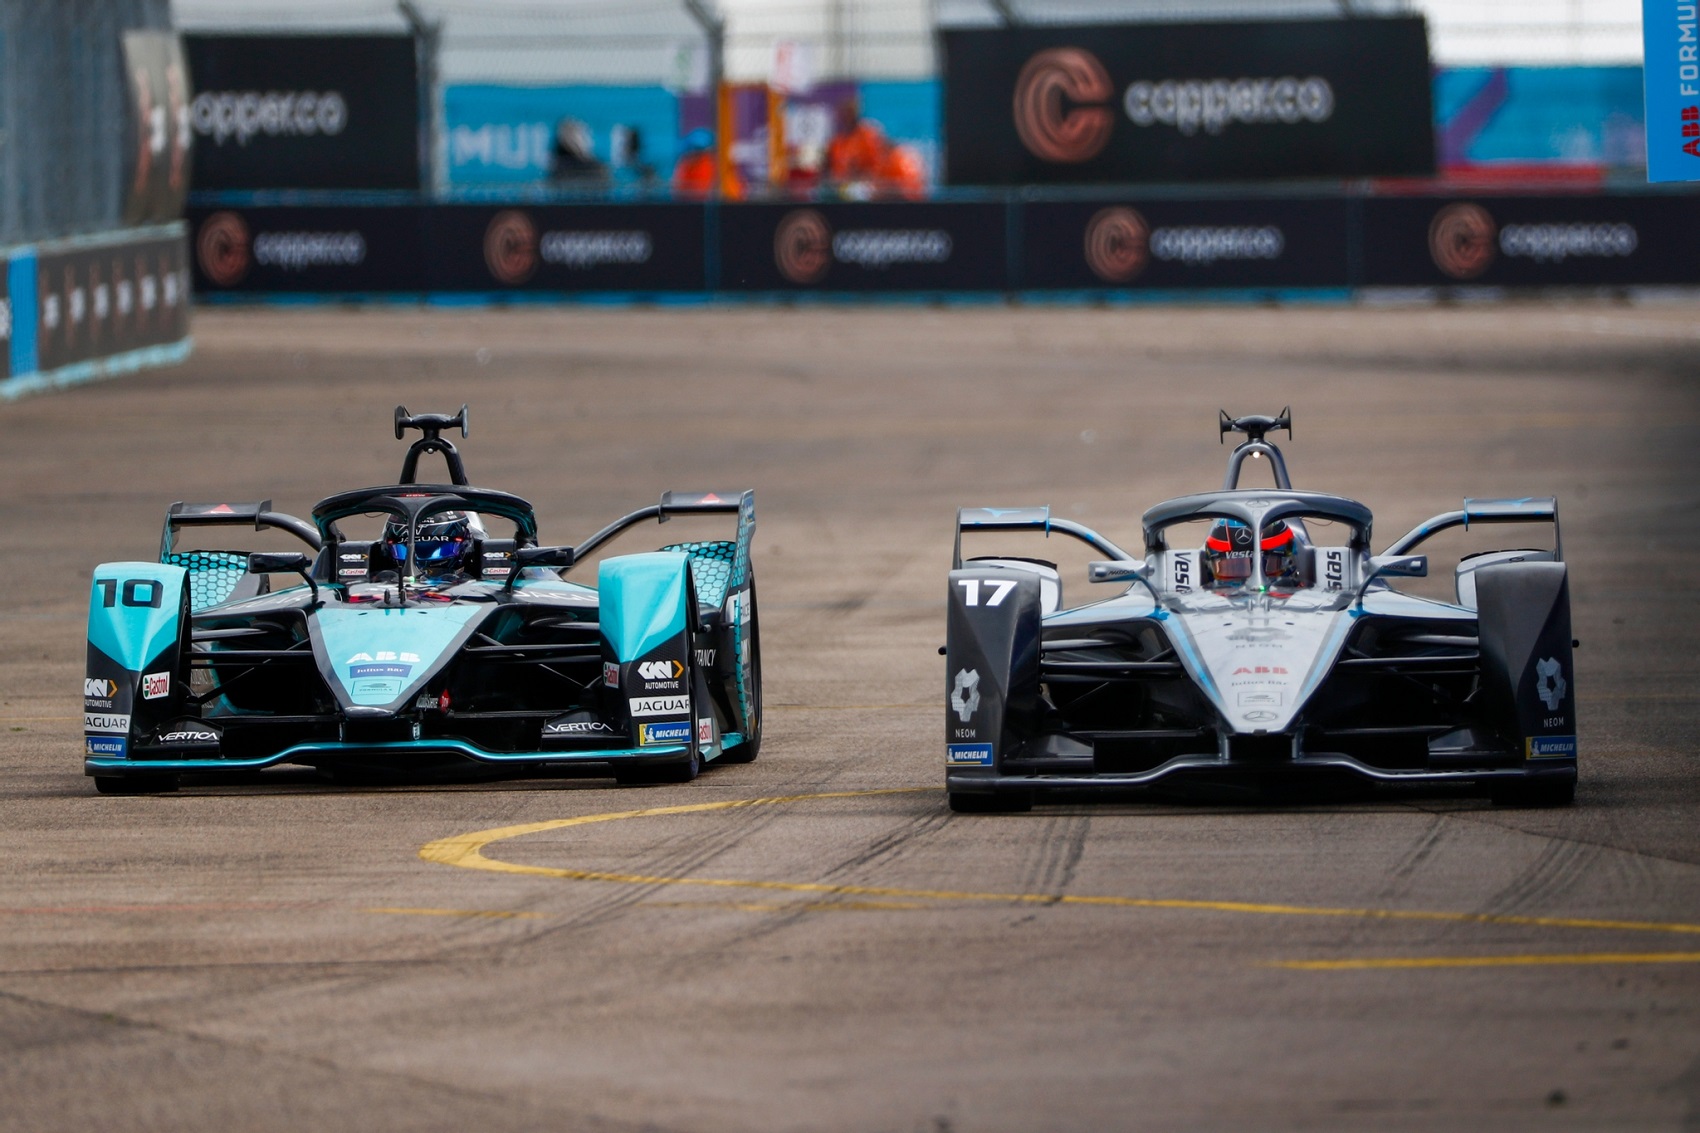 Bird vs. Vandoorne, Jaguar vs. Mercedes, FE, Formula E